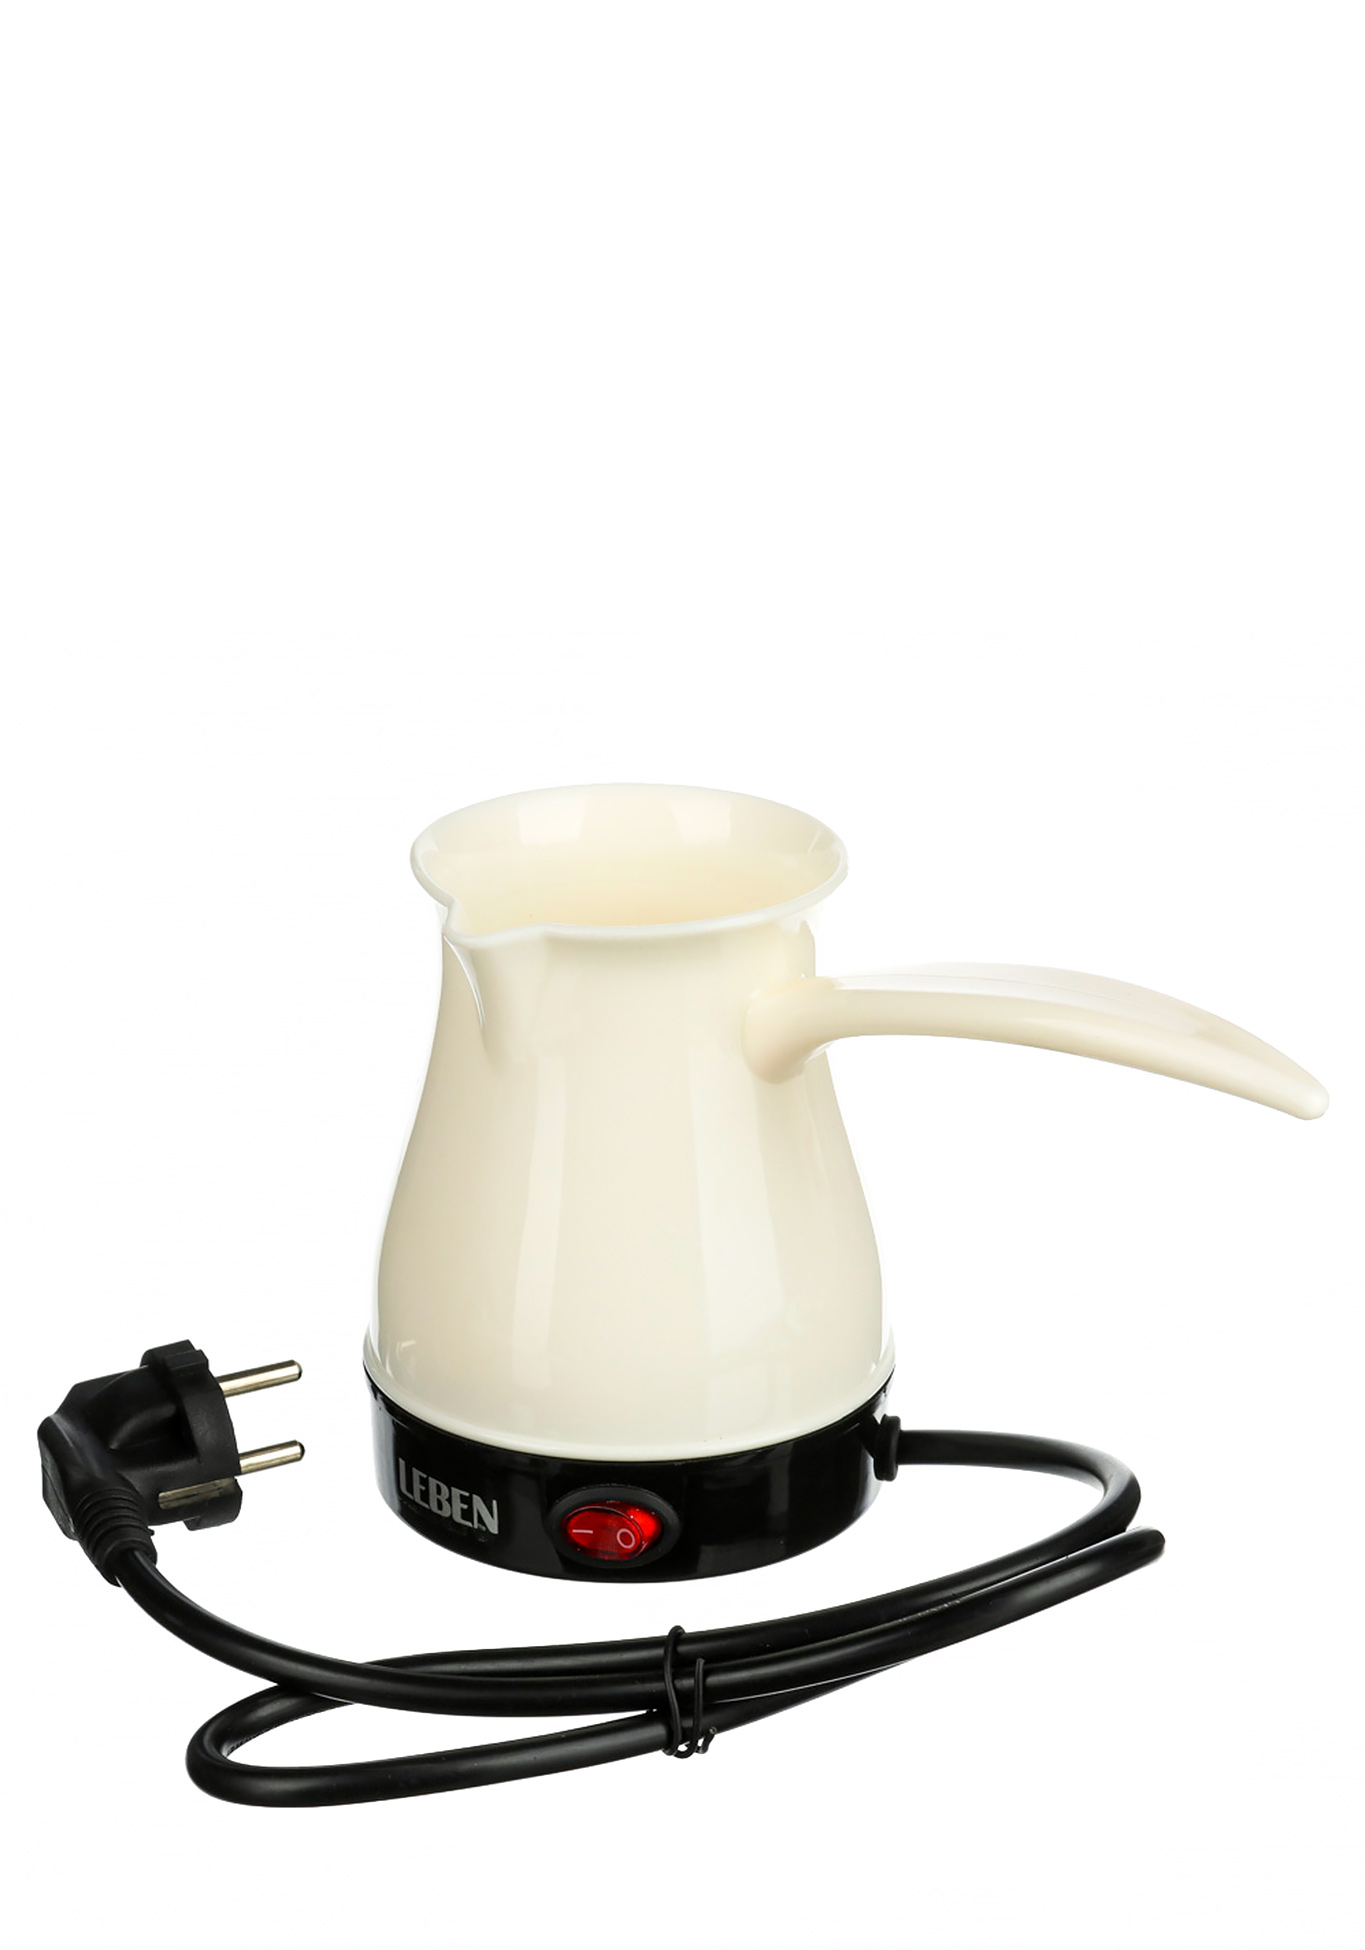 Турка электрическая с выключателем LEBEN, цвет молочный - фото 2